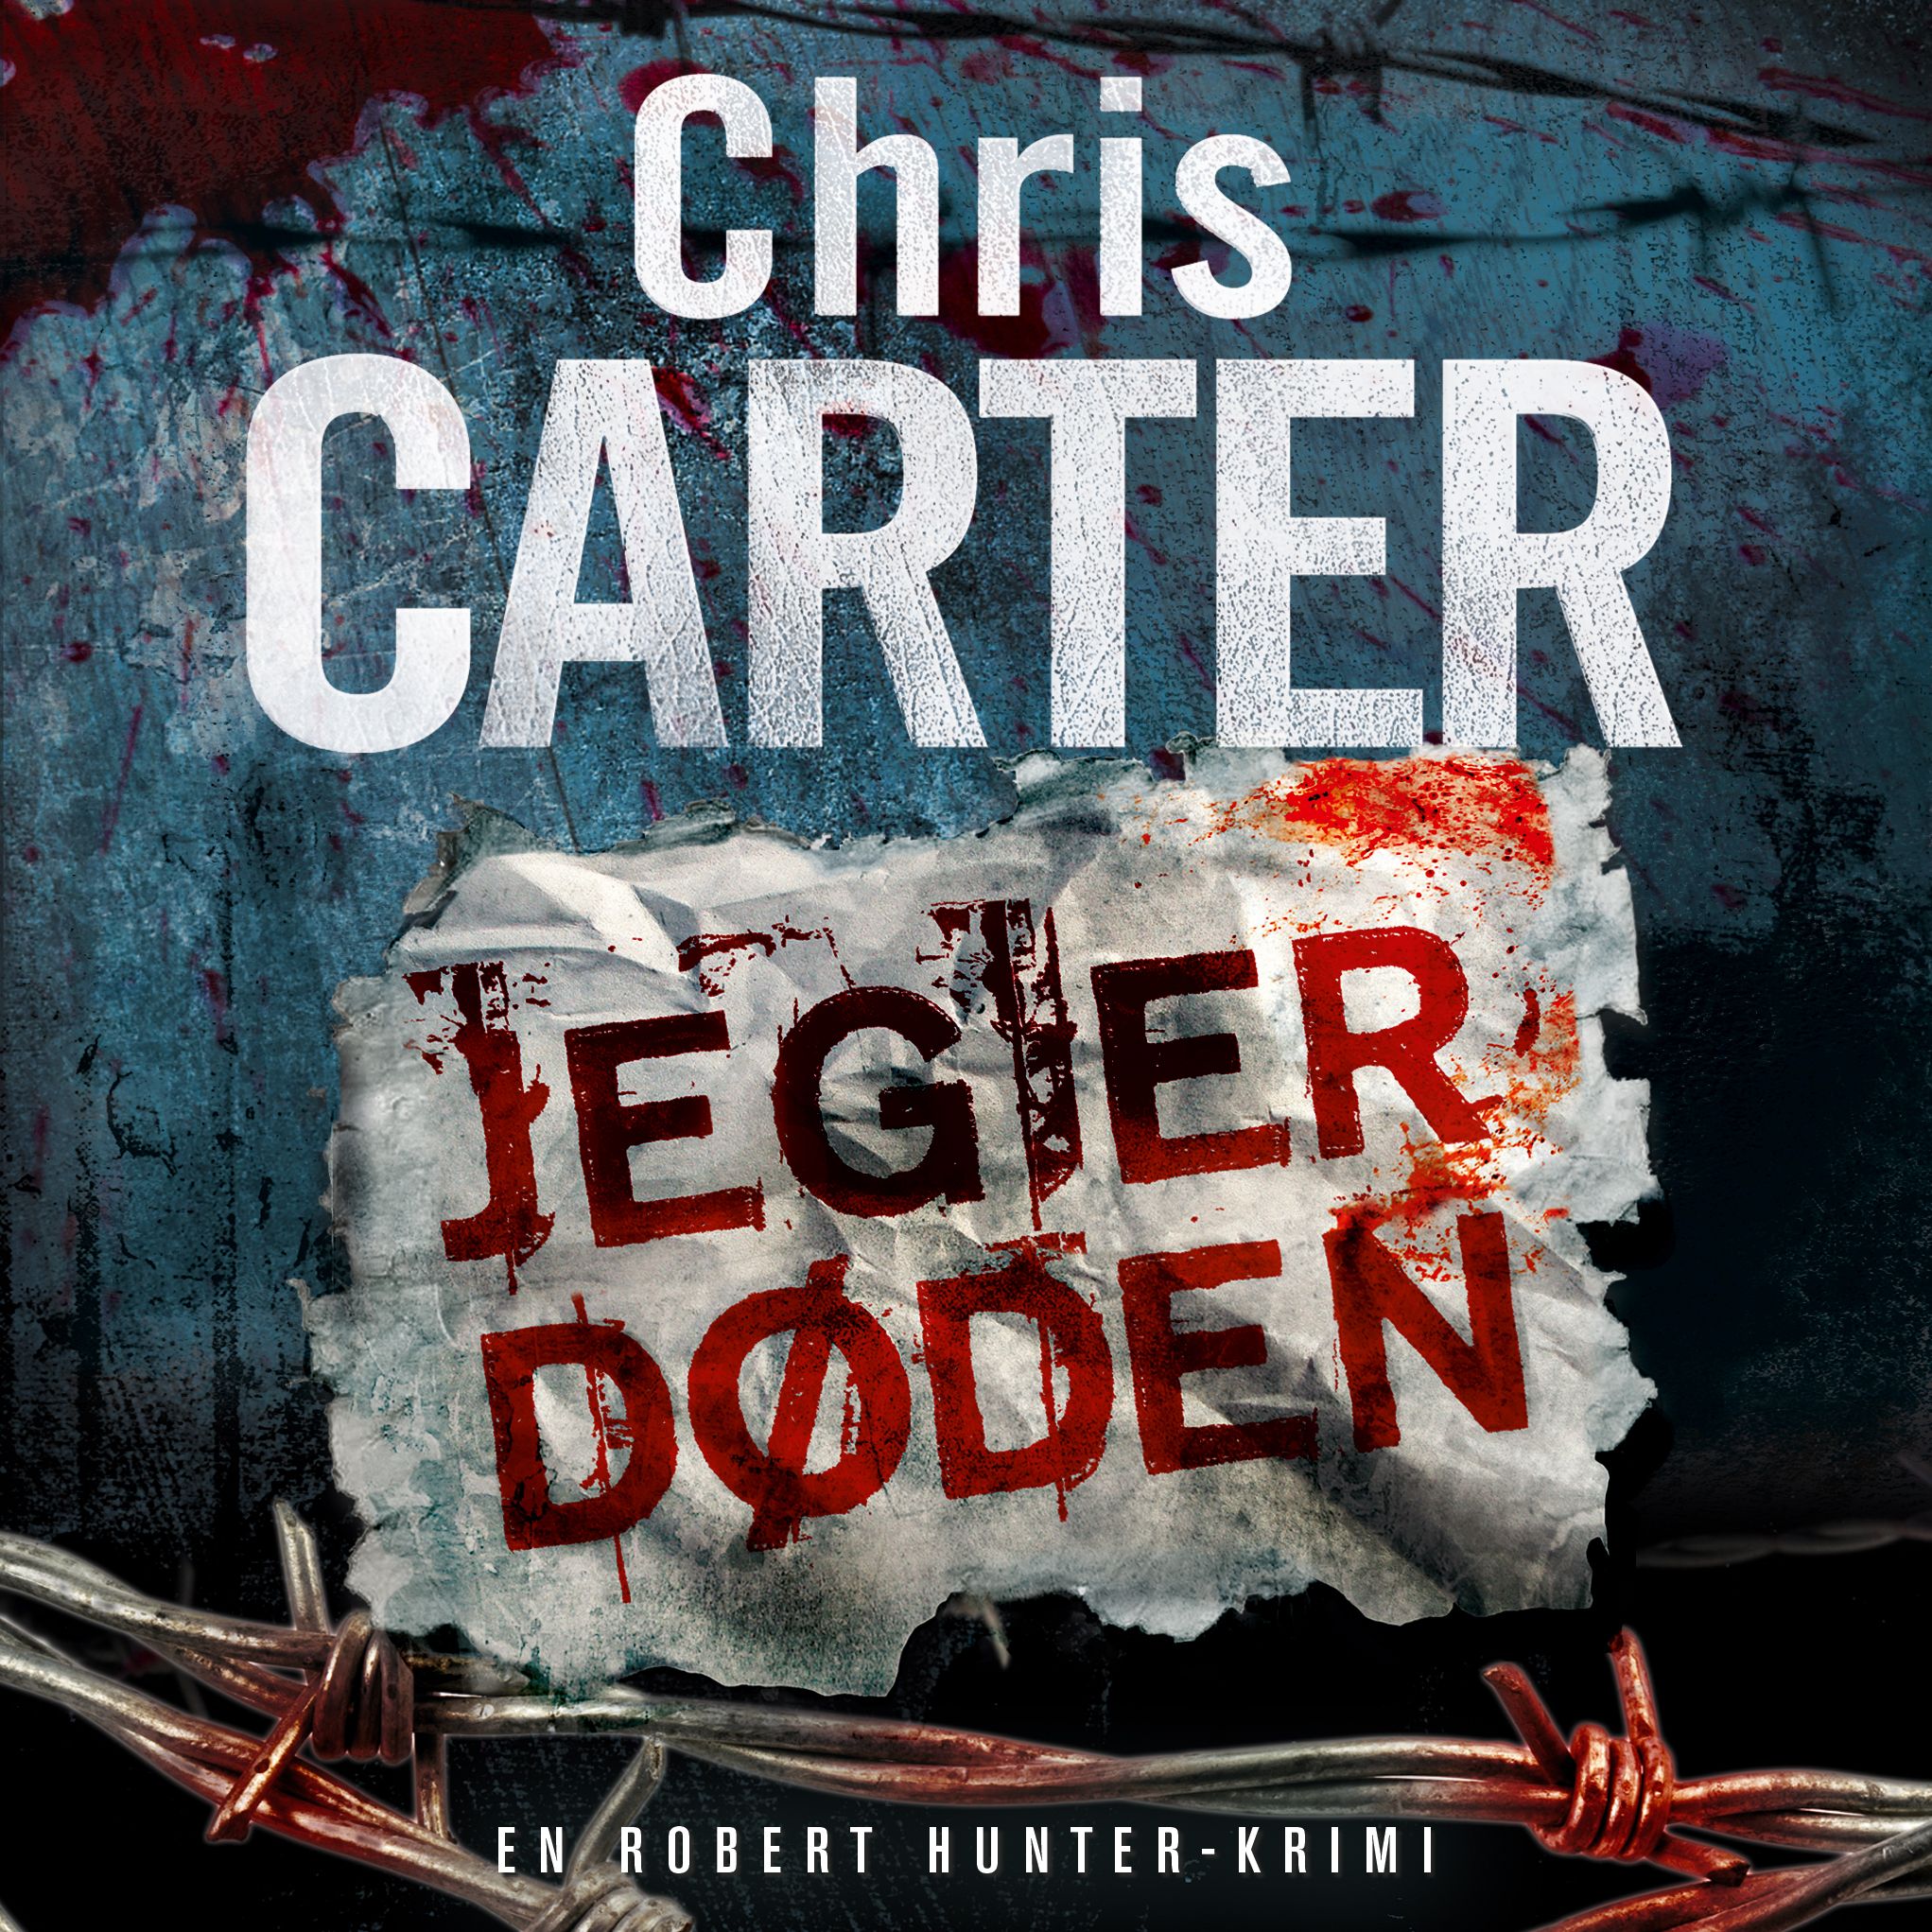 Jeg er døden, ljudbok av Chris Carter